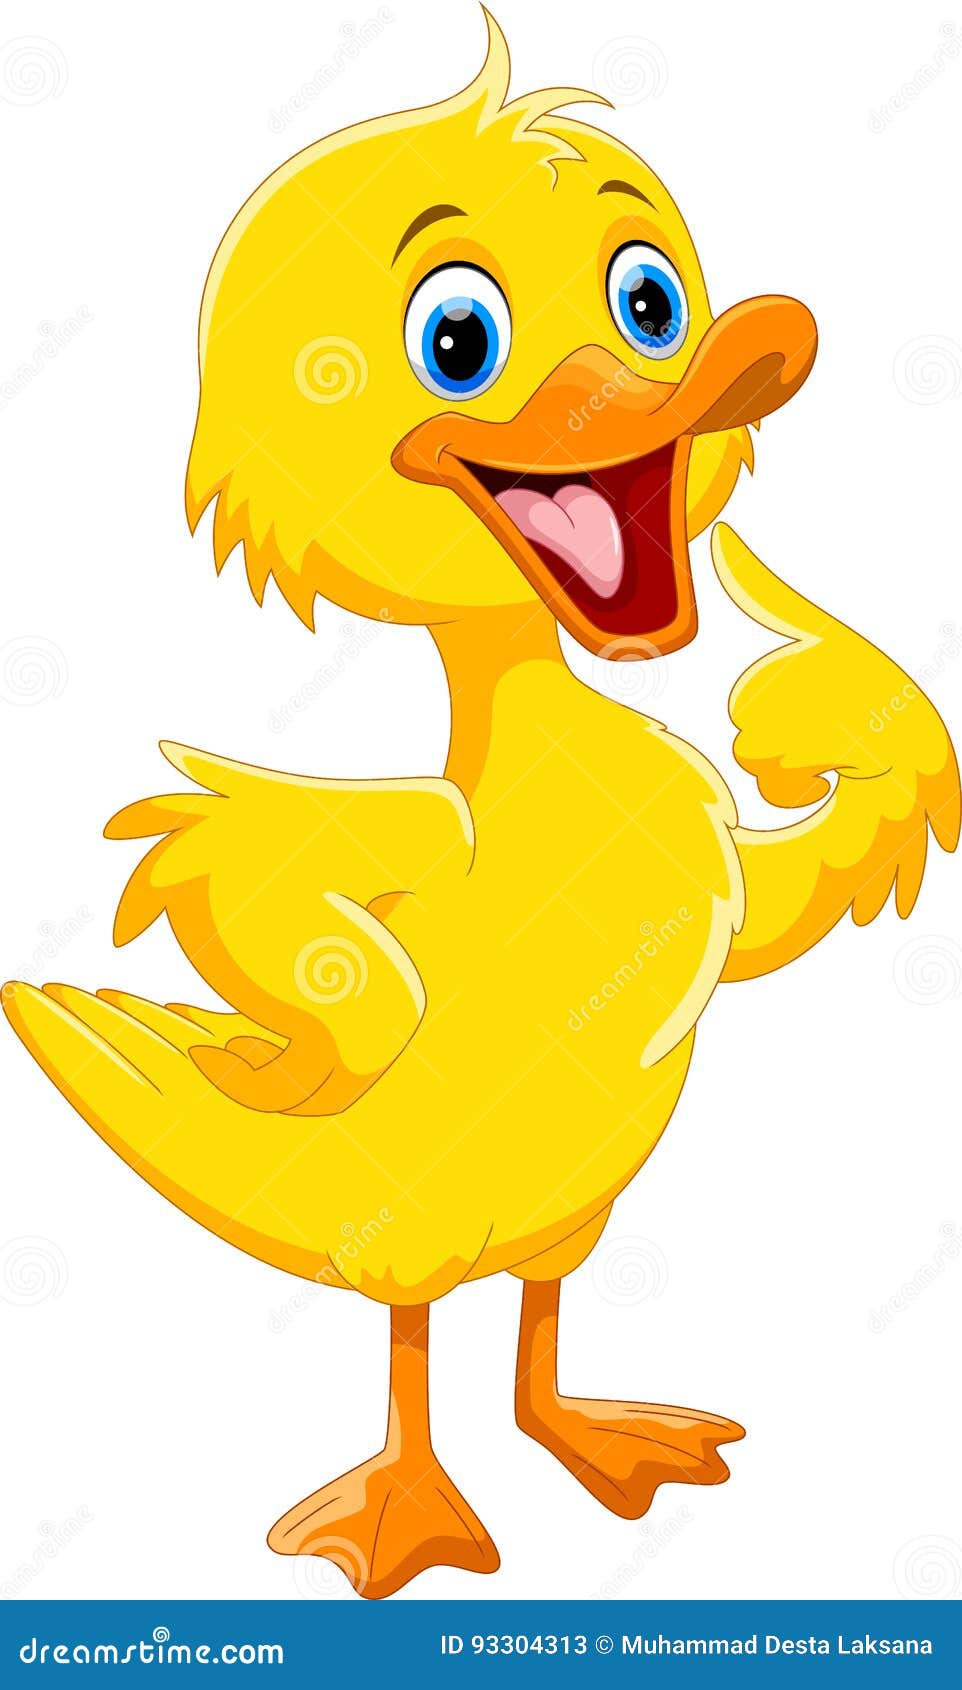 Cute duck cartoon stock illustration. Illustration of beak - 93304313